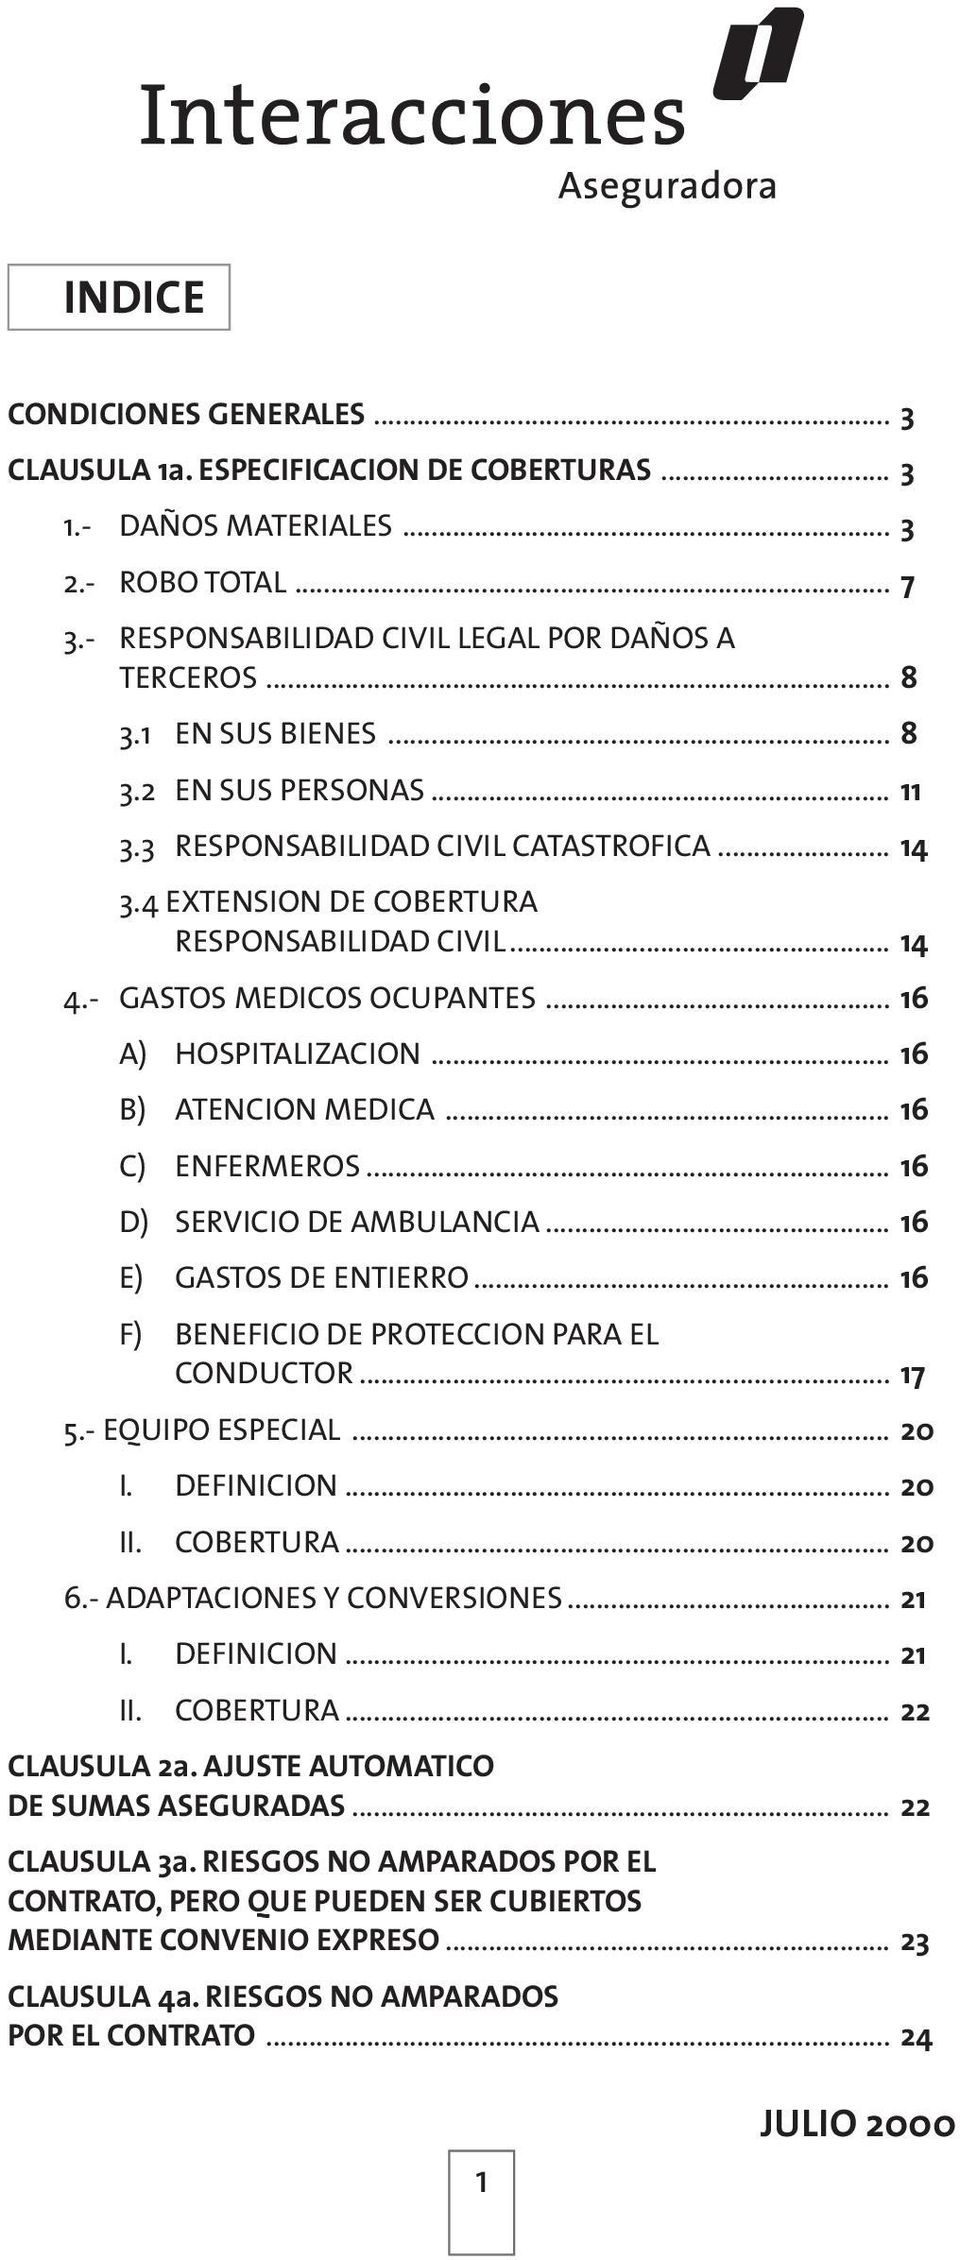 .. 16 B) ATENCION MEDICA... 16 C) ENFERMEROS... 16 D) SERVICIO DE AMBULANCIA... 16 E) GASTOS DE ENTIERRO... 16 F) BENEFICIO DE PROTECCION PARA EL CONDUCTOR... 17 5.- EQUIPO ESPECIAL... 20 I.